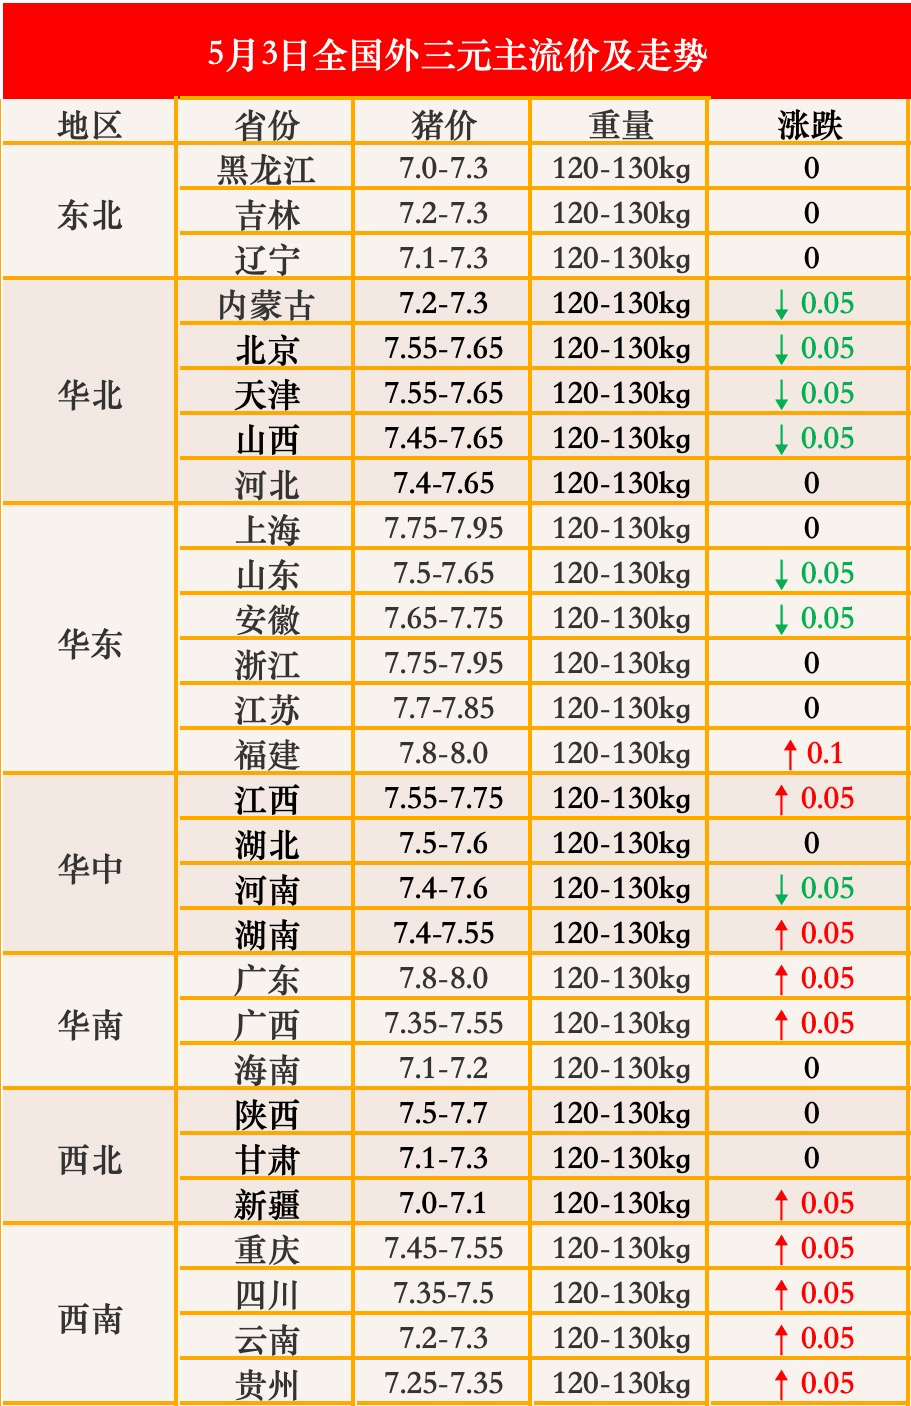 【5月3日猪价】涨跌互现,最高160元/公斤!